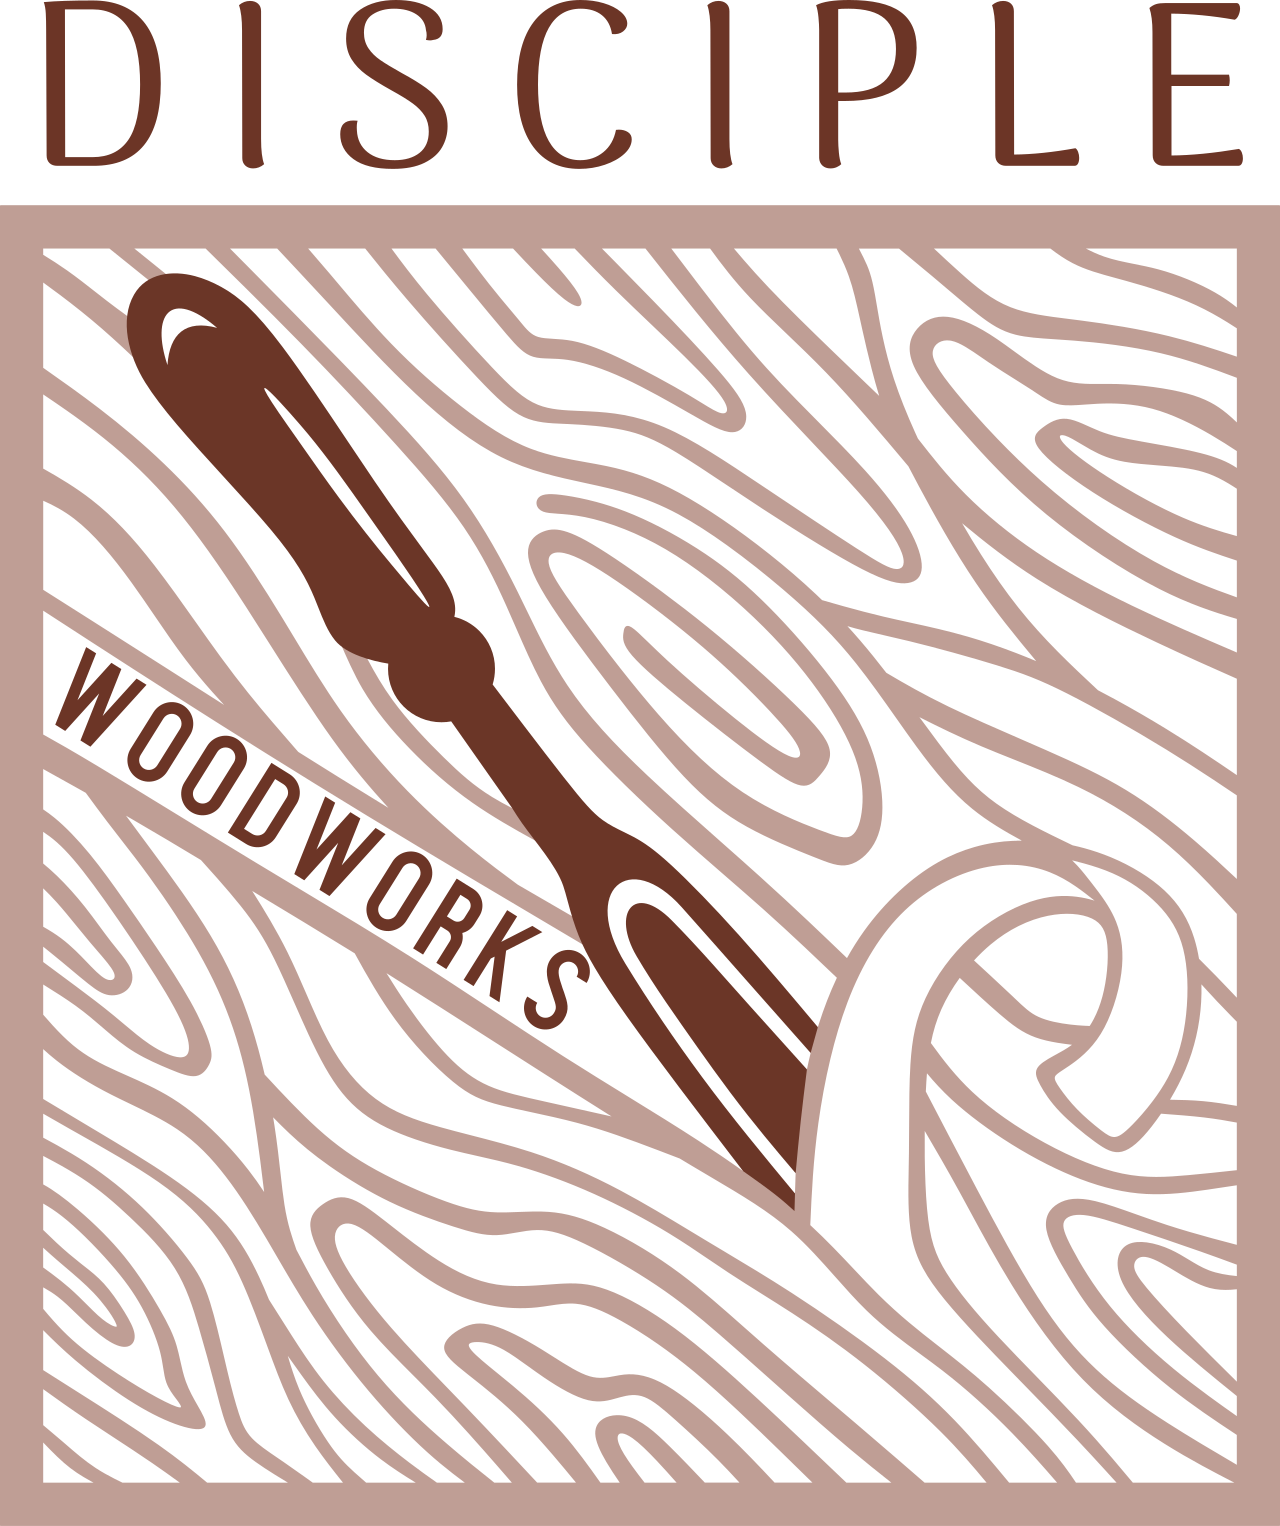 DISCIPLE's logo